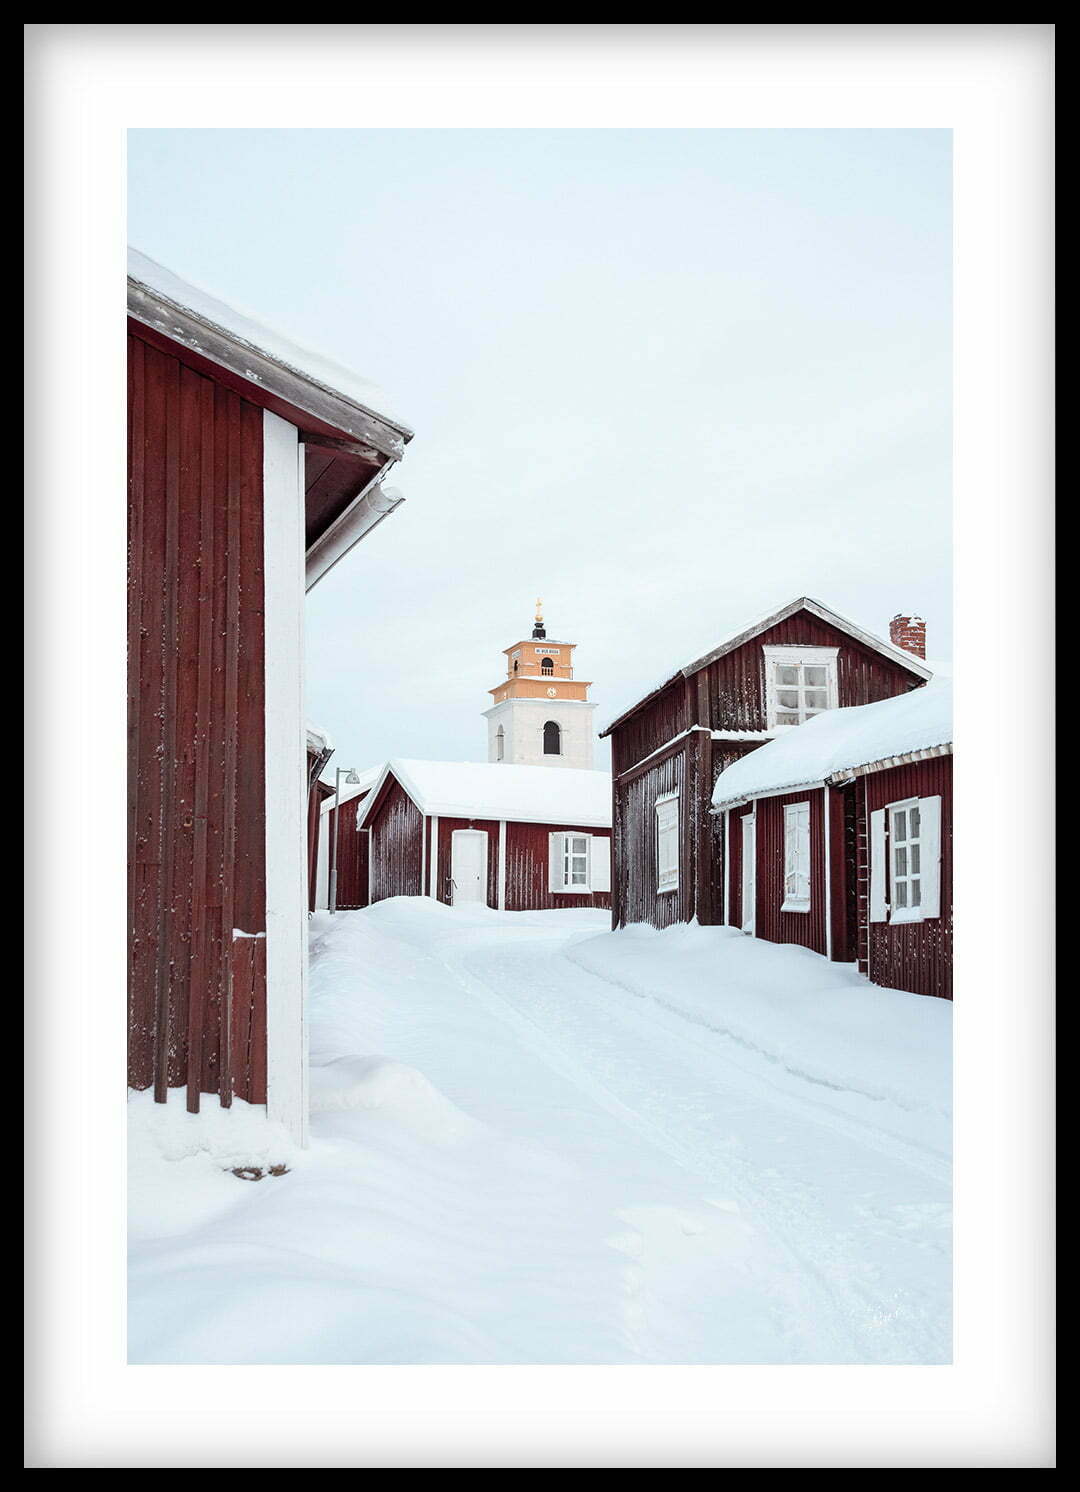 Jul och vinter i Gammelstad Kyrkstad Tavla 00126